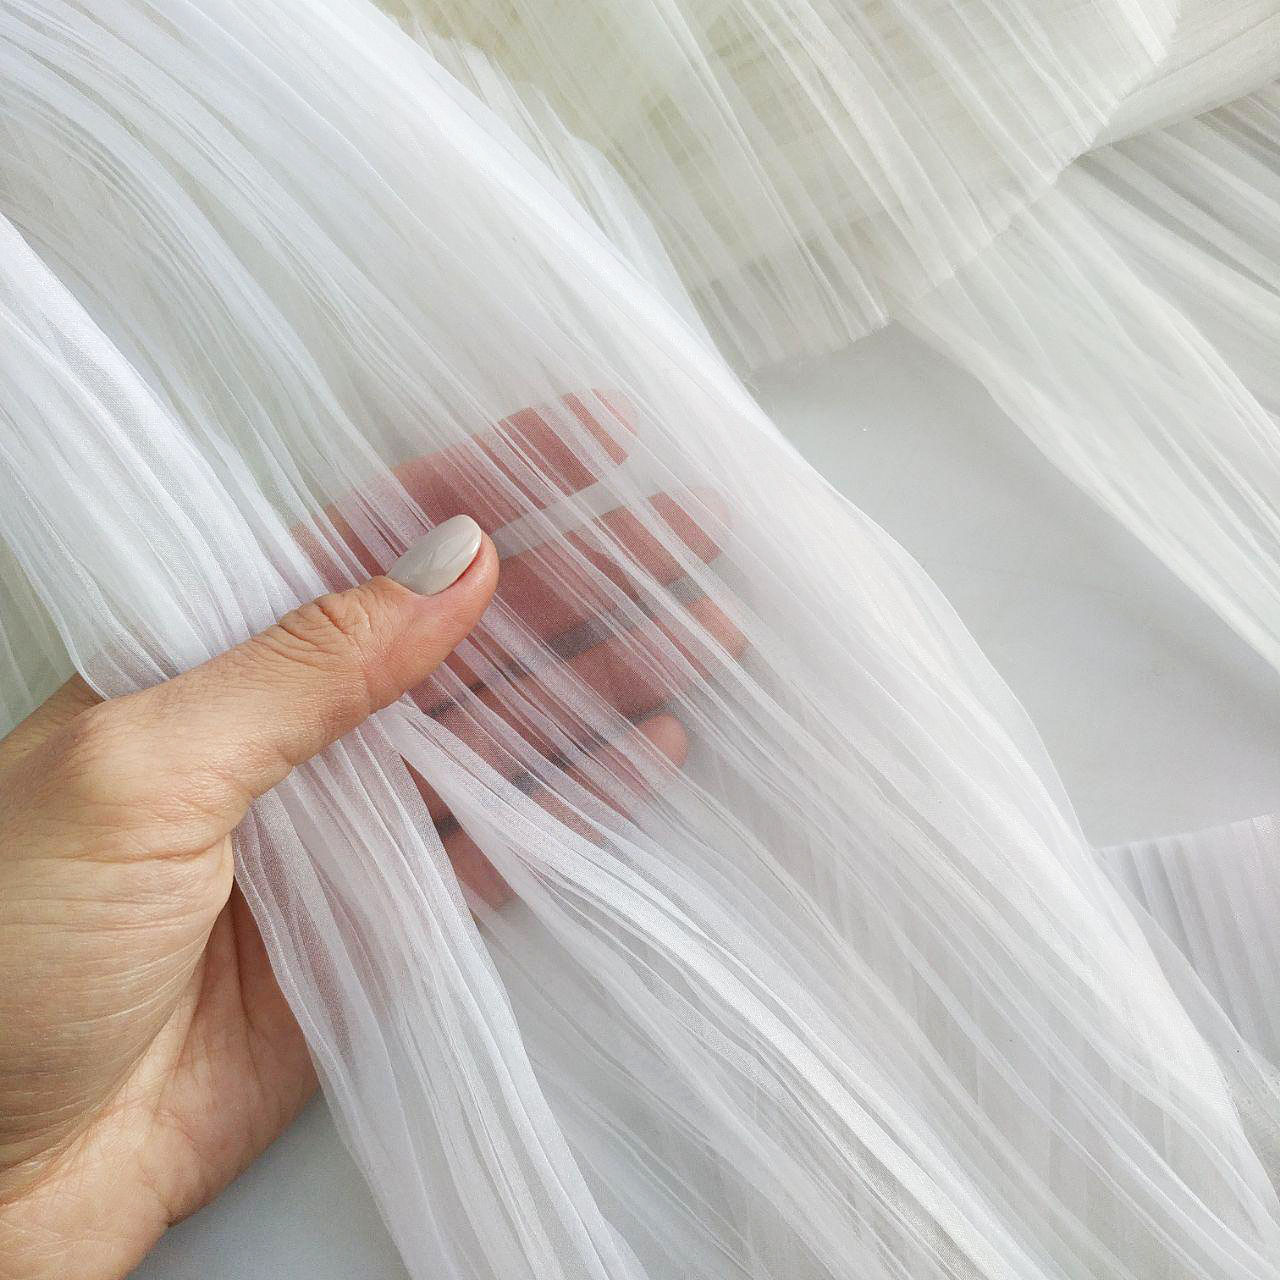 Как правильно стирать шторы из органзы? - интернет-журнал "дом и быт"